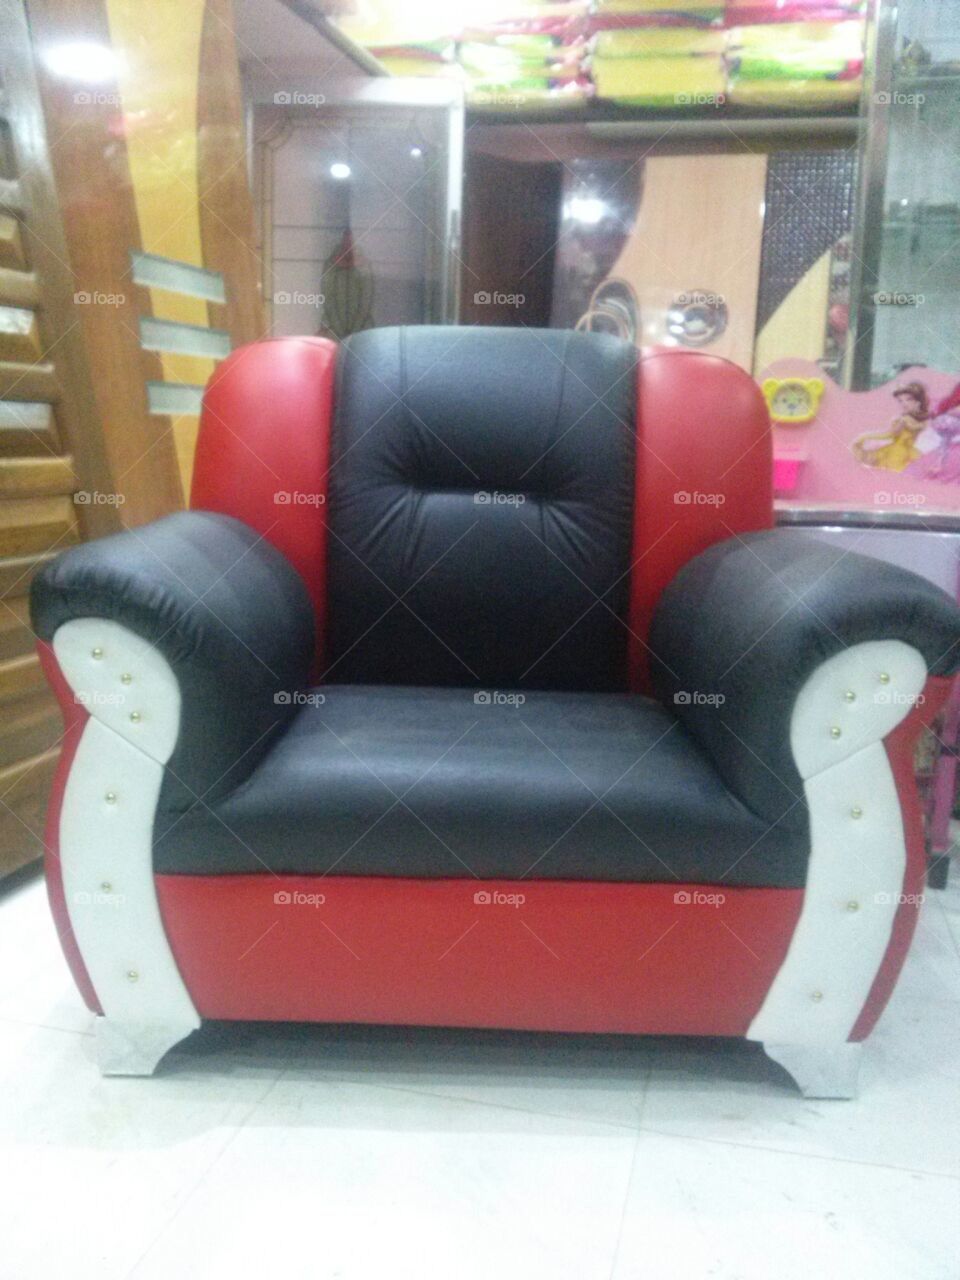 Seat, Sofa, Furniture, Chair, Interior Design